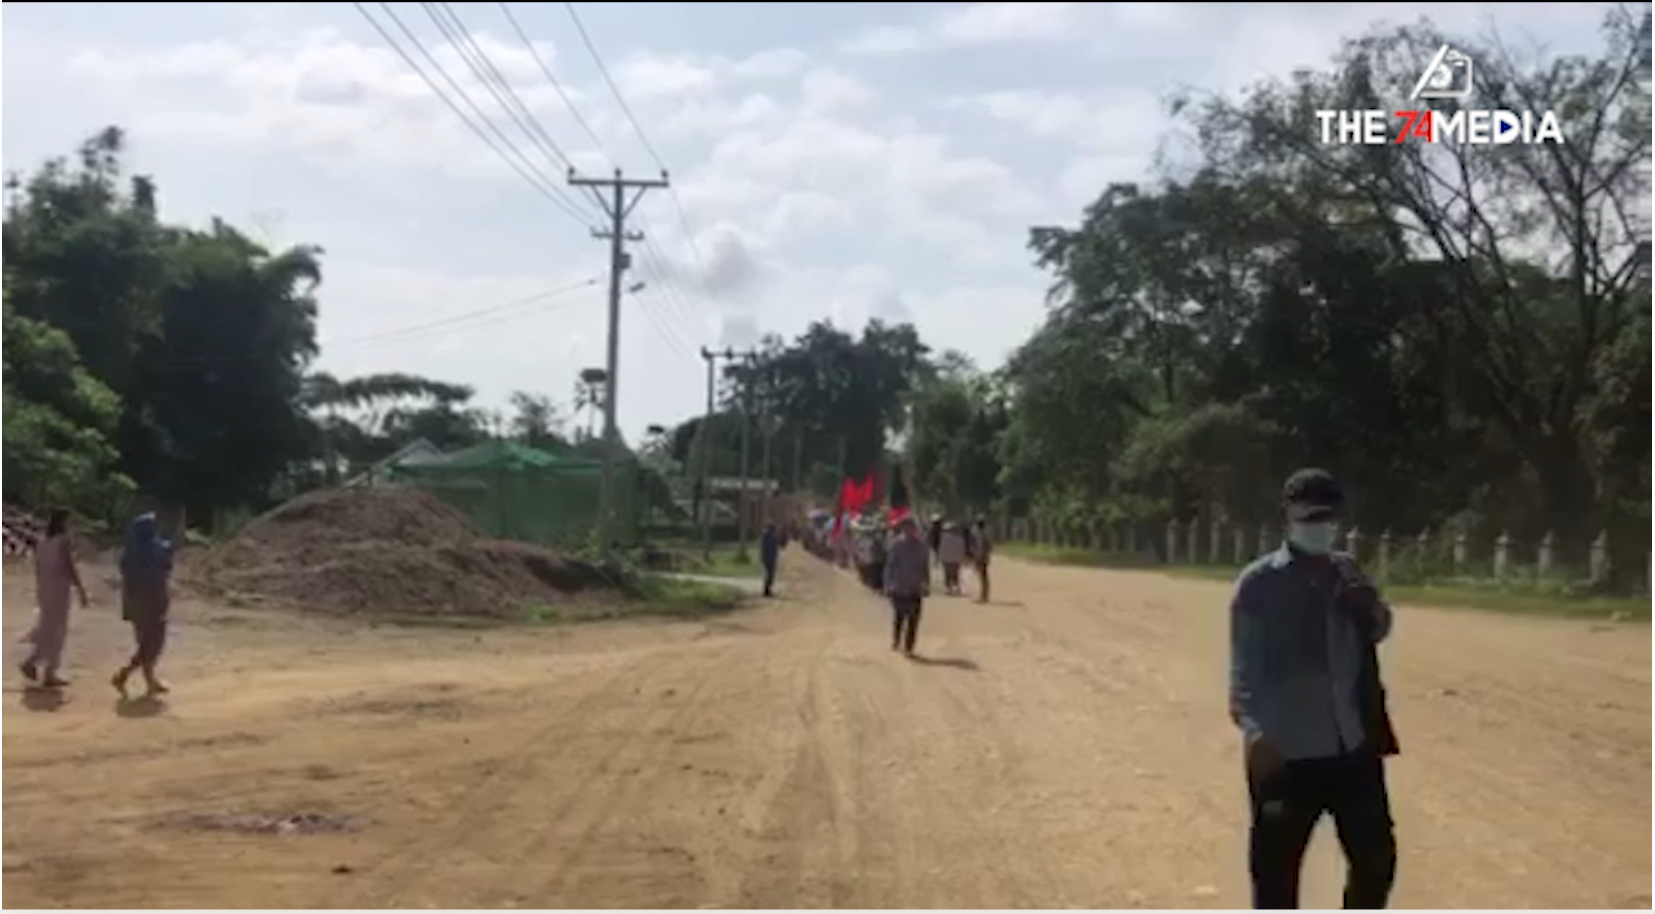 နေ့စဉ်မပြတ်ပြုလုပ်နေသည့် ဖားကန့်မြို့နယ် လုံးခင်းအုပ်စု၏ စစ်အာဏာရှင်စနစ် ဆန့်ကျင်ရေး ပြောက်ကျားသပိတ်